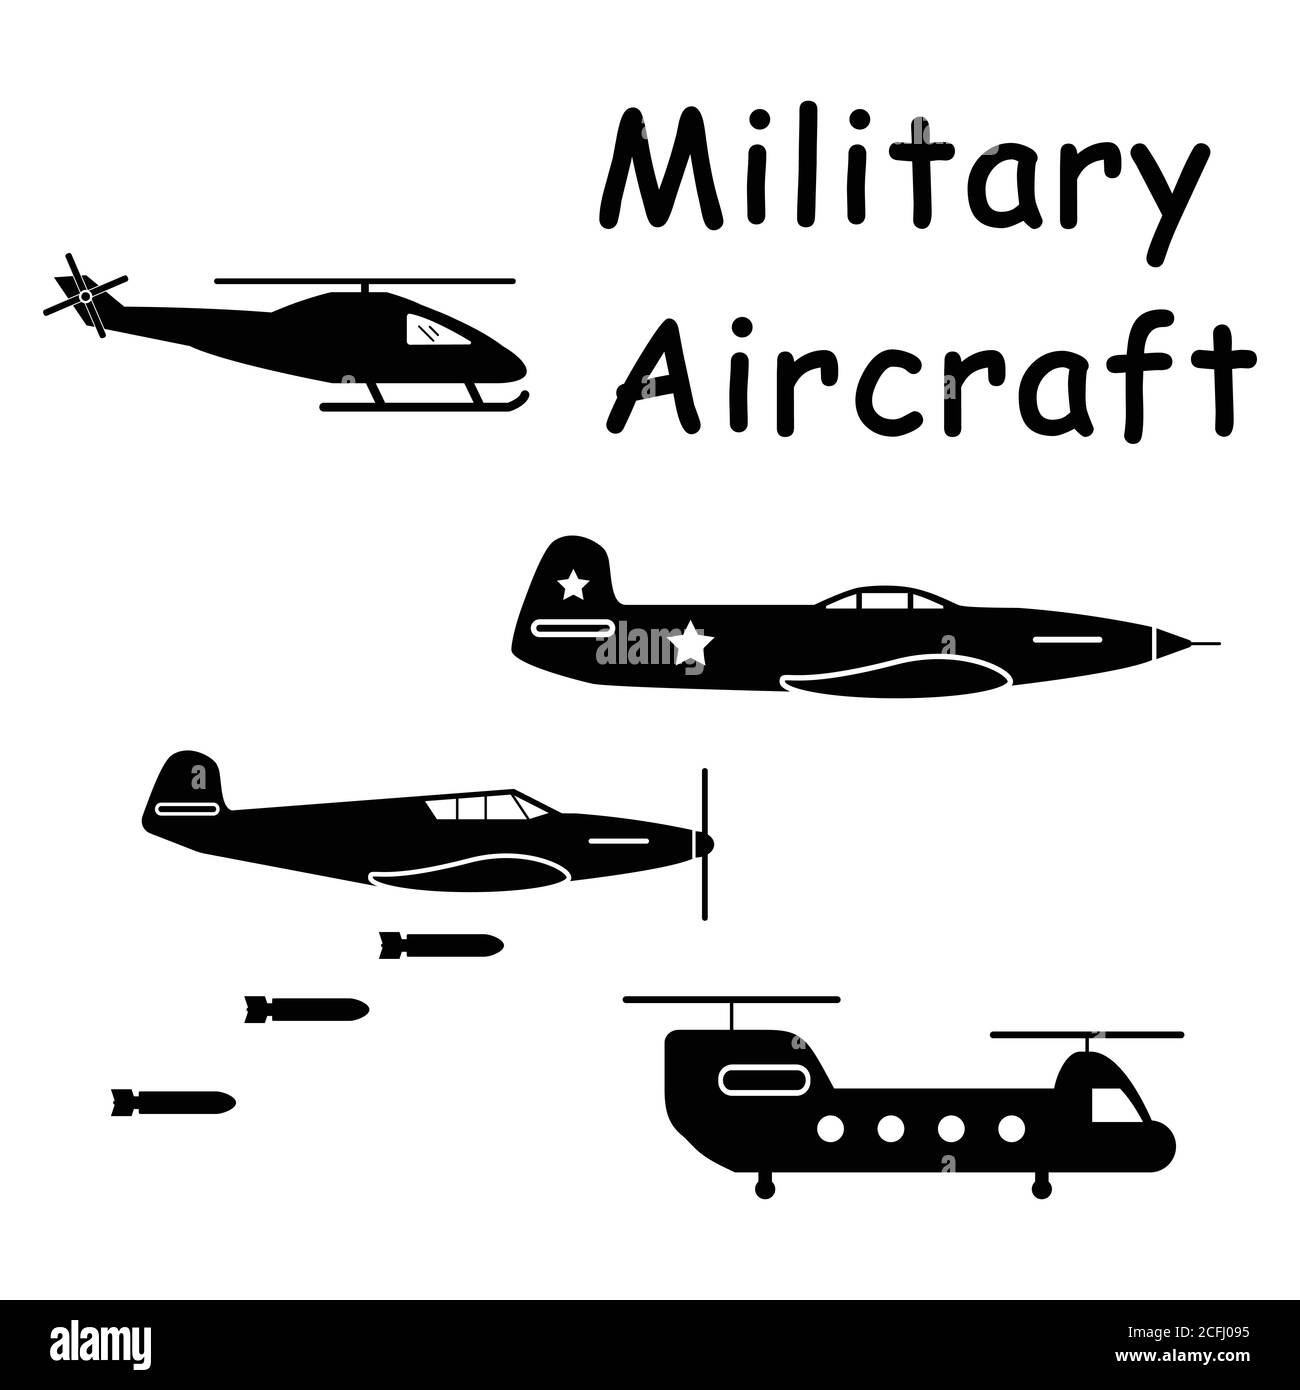 Avions militaires avions hélicoptère. Pictogramme représentant les appareils utilisés dans la guerre aérienne, comme les avions de chasse et les hélicoptères. Vecteur EPS Illustration de Vecteur